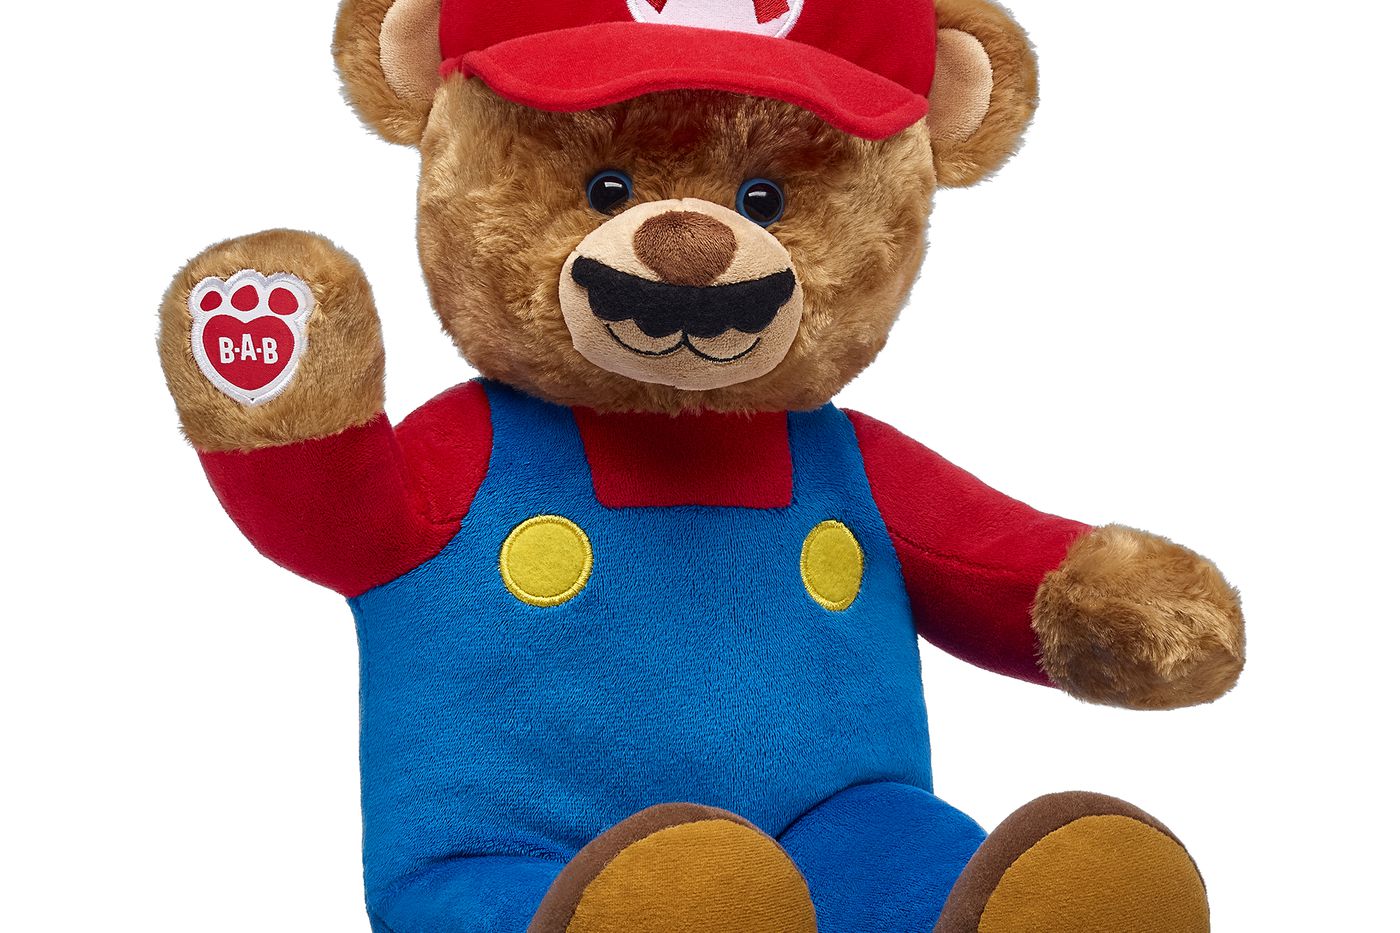 Build-A-Bear’s Nintendo collection is an adorable take on Super Mario.